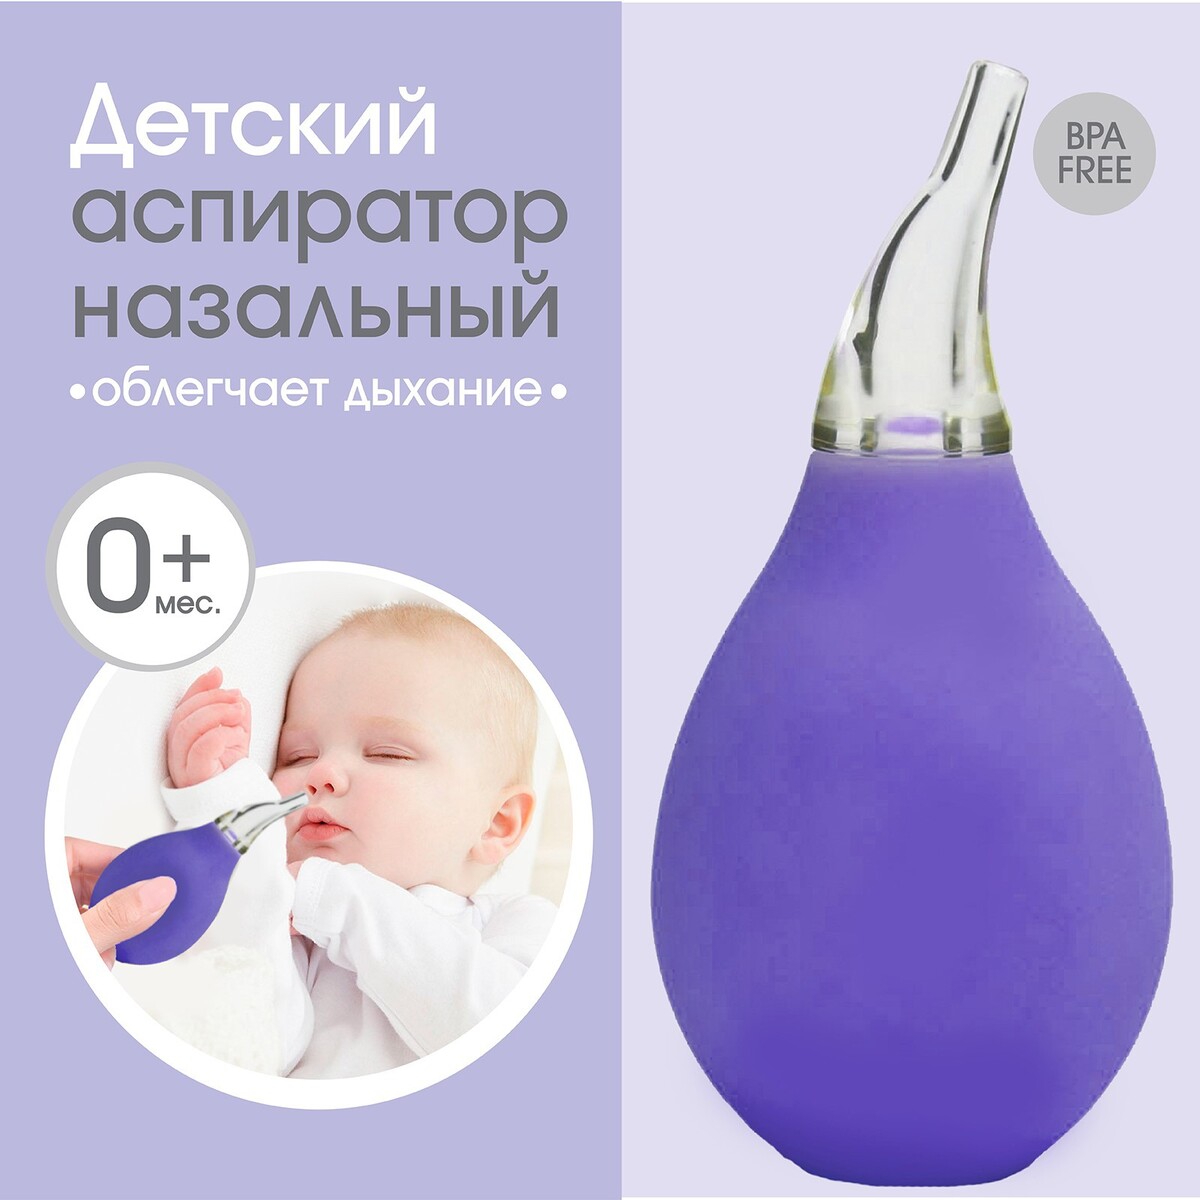 Детский назальный аспиратор, цвет фиолетовый детский назальный аспиратор фиолетовый